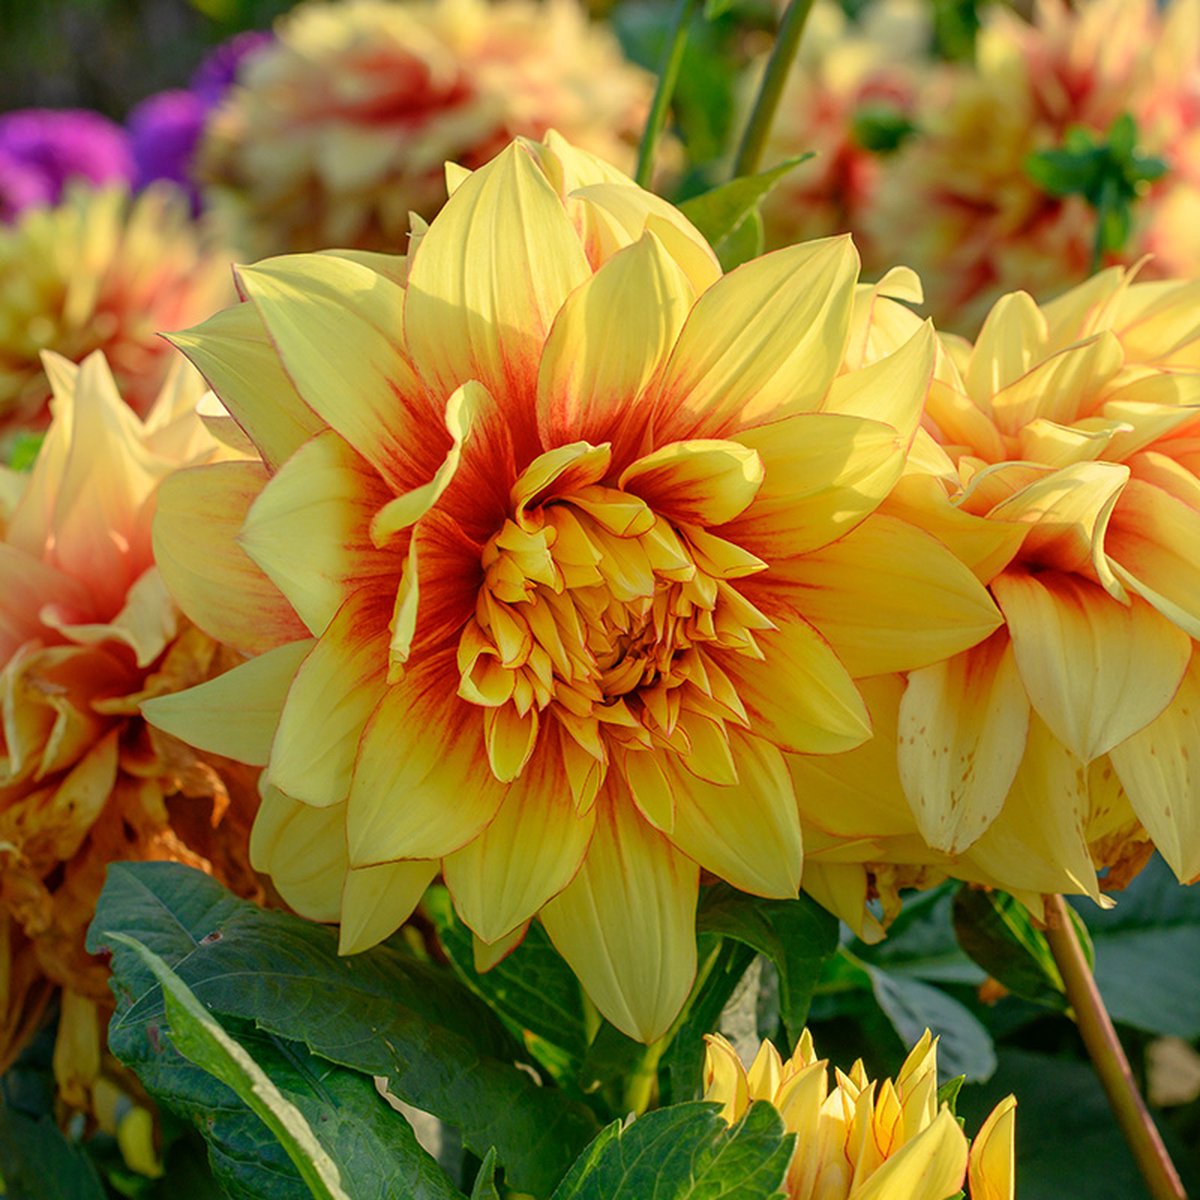 Dahlia Dazzling Sun | 3 stuks | Decoratieve Dahlia | Knol | Geel | Rood | Dahlia Knollen van Top Kwaliteit | 100% Bloeigarantie | QFB Gardening